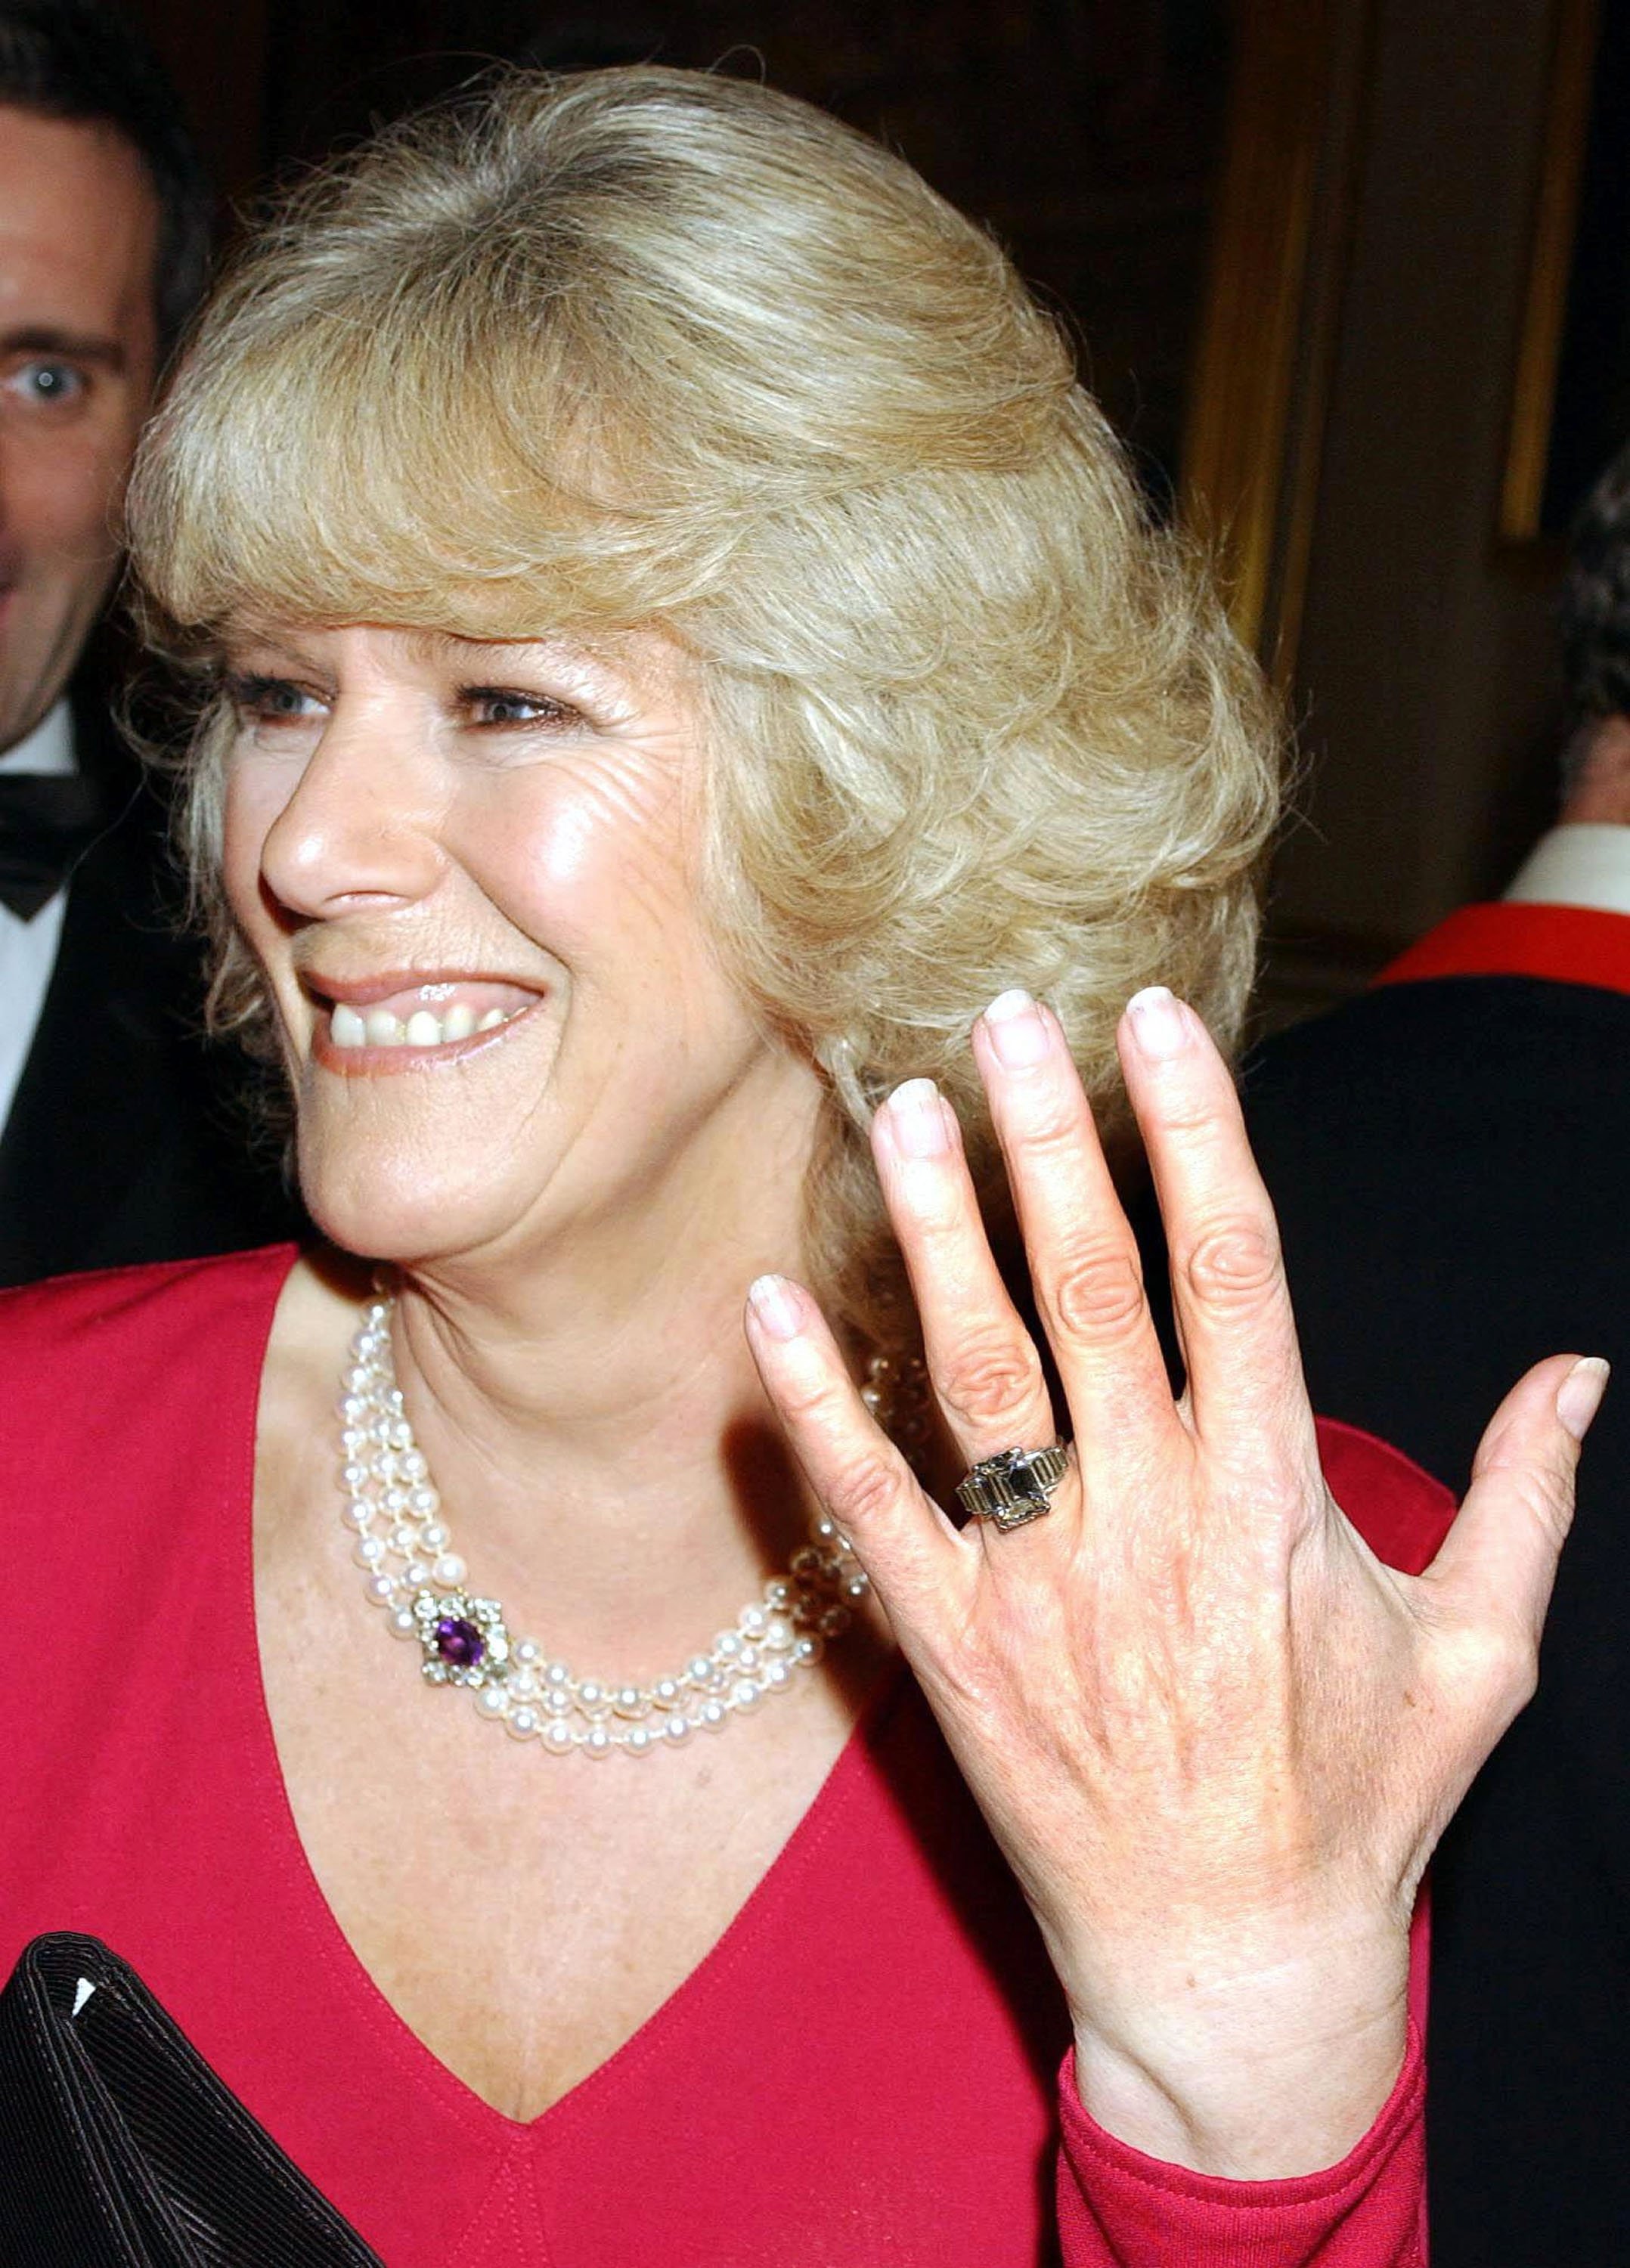 Camilla Parker Bowles zeigt ihren Verlobungsring, als sie nach der Bekanntgabe ihrer Verlobung am 10. Februar 2005 zu einer Party auf Schloss Windsor eintrifft. | Quelle: Getty Images